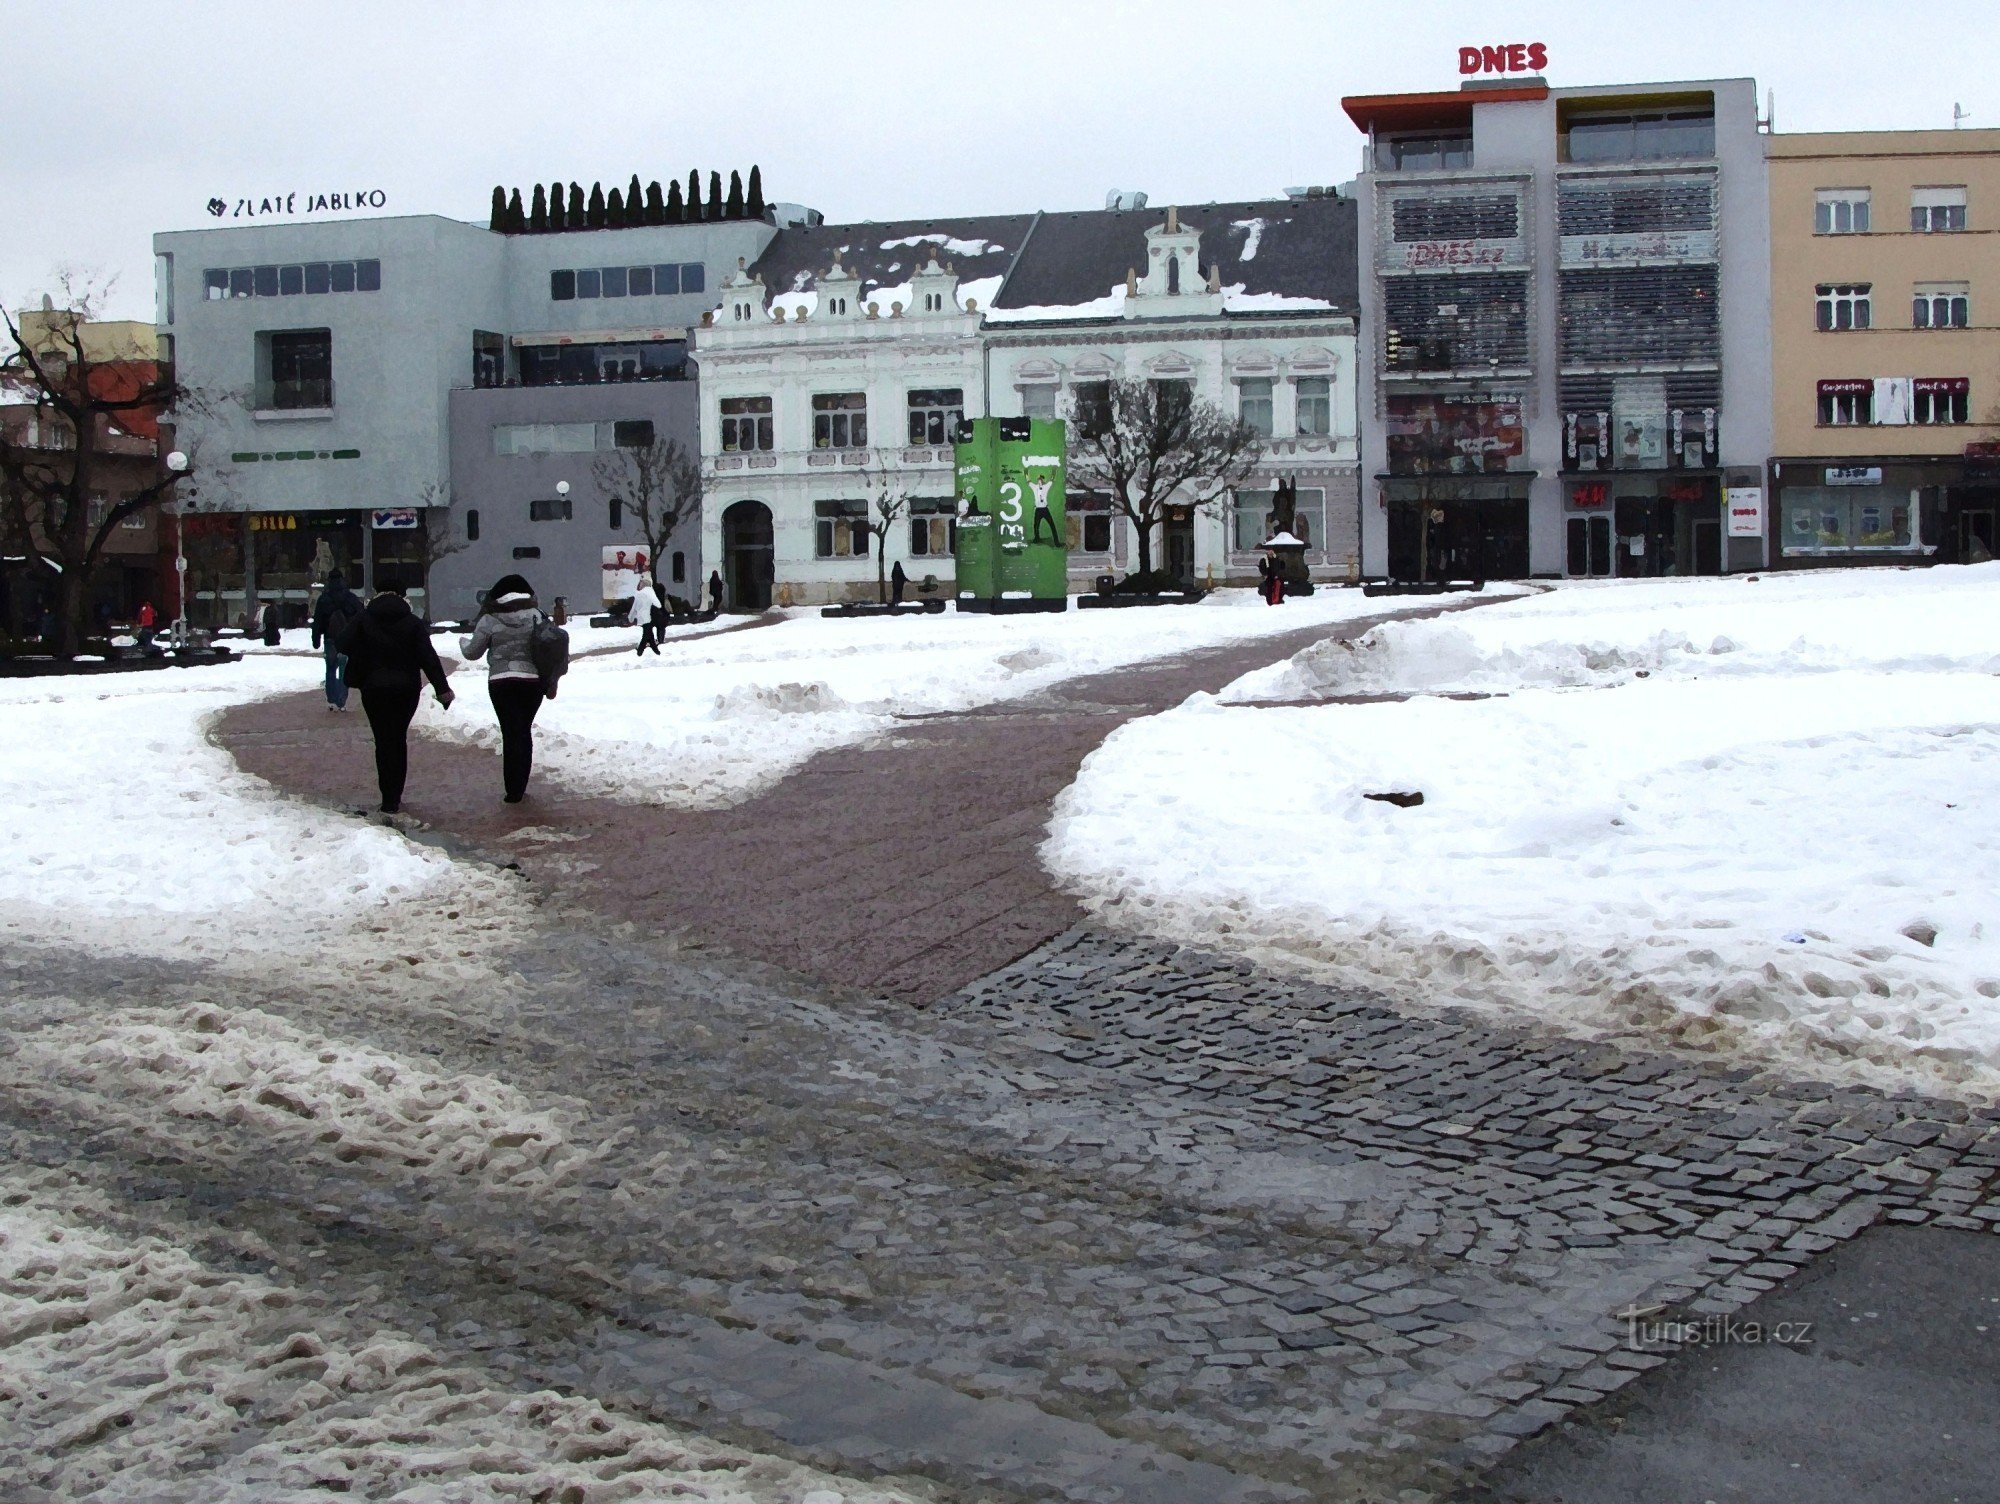 Quảng trường chính của Zlín - Quảng trường Hòa bình